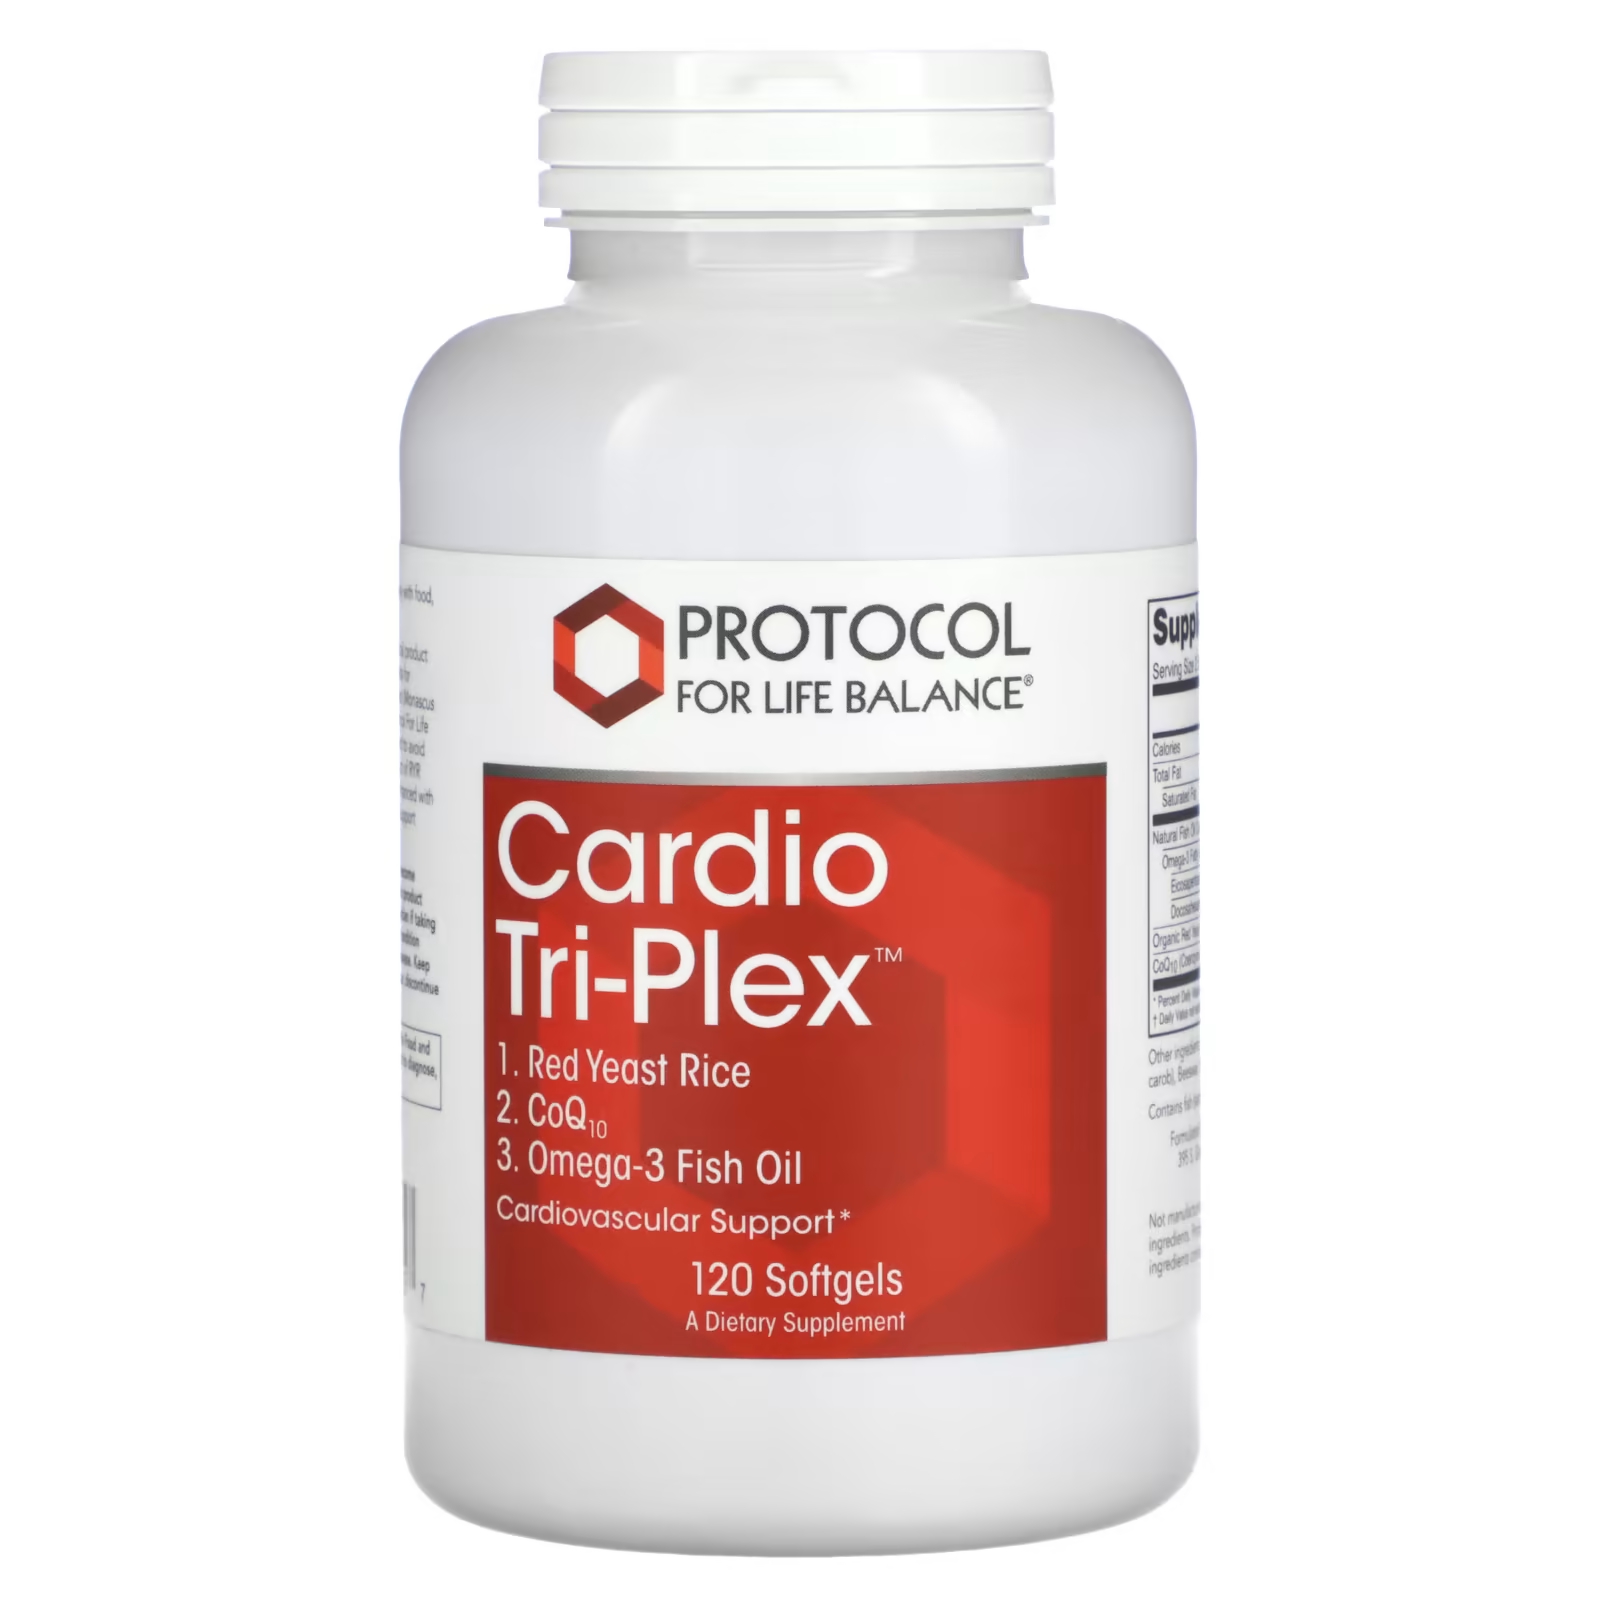 Пищевая добавка Protocol for Life Balance Cardio Tri-Plex, 120 мягких таблеток